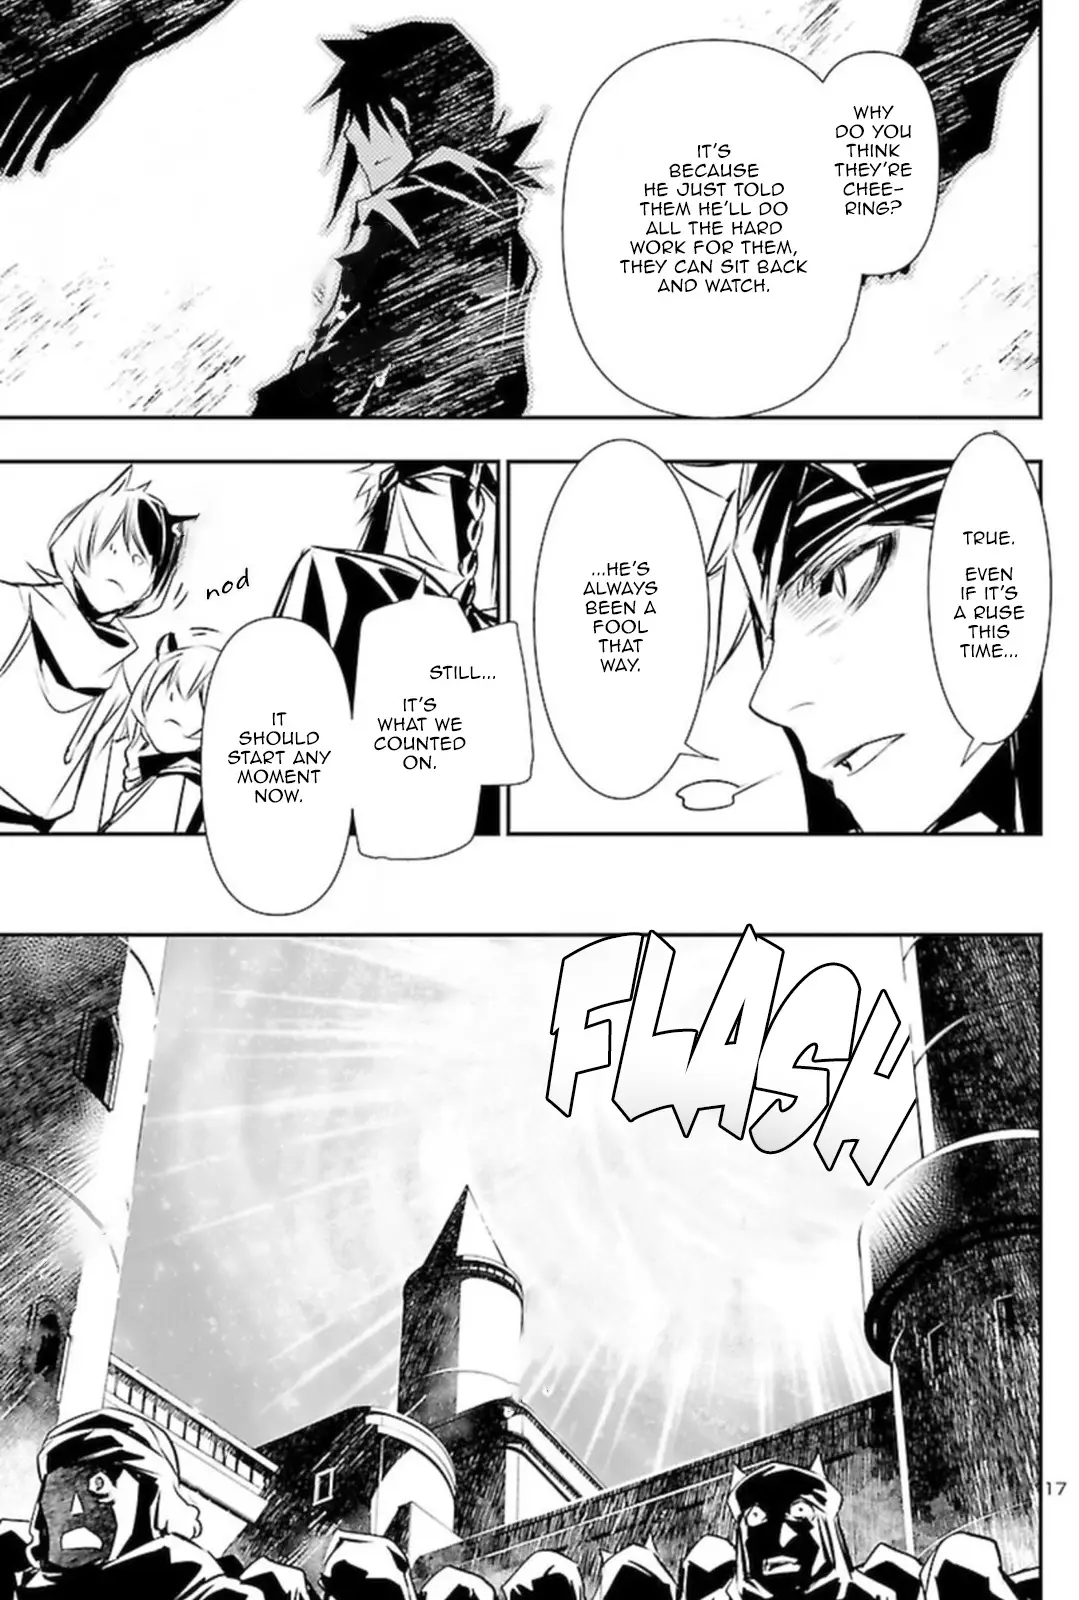 Shinju no Nectar - 68 page 17-1703ba3b